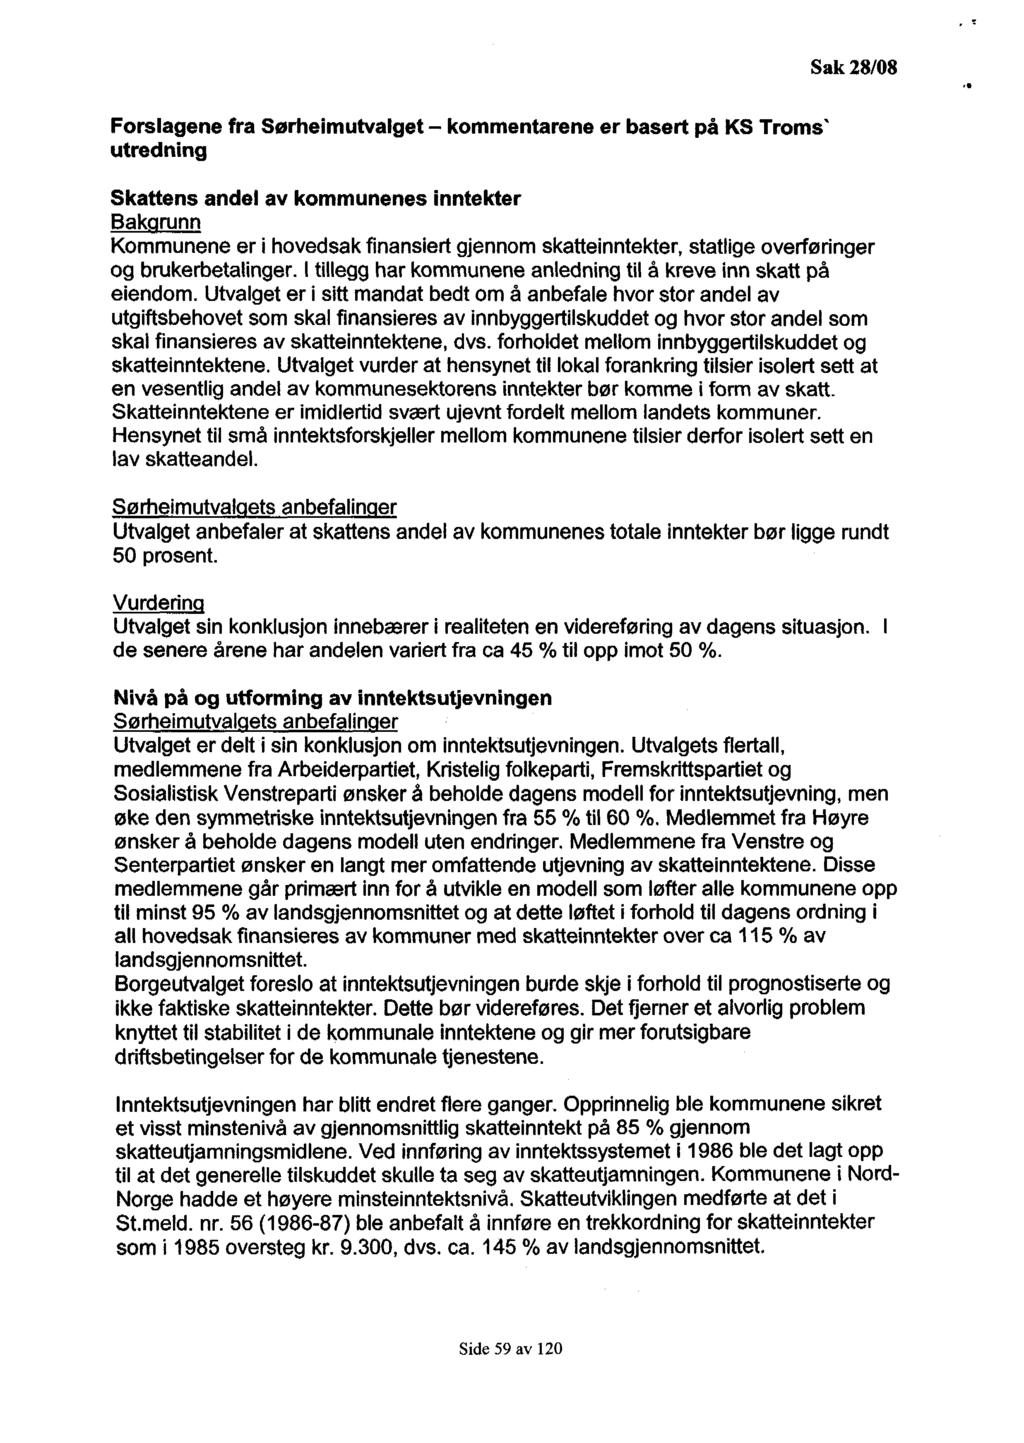 Forslagene fra Sørheimutvalget - kommentarene er basert på KS Troms' utredning Skattens andel av kommunenes inntekter Bakgrunn Kommunene er i hovedsak finansiert gjennom skatteinntekter, statlige